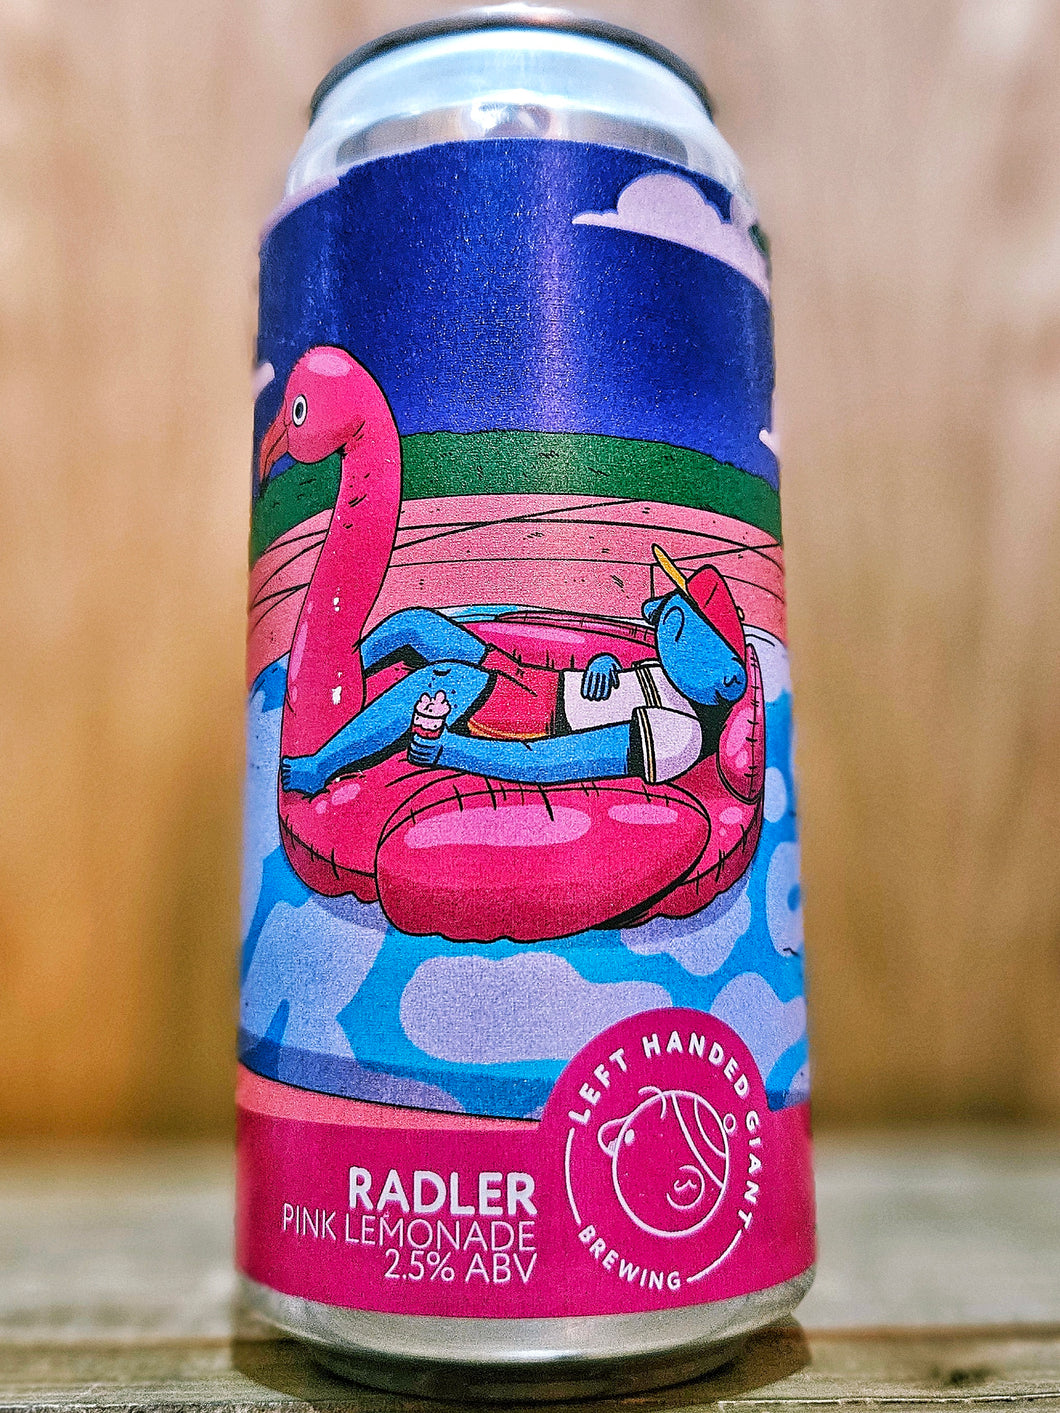 Left Handed Giant - Radler: Pink Lemonade